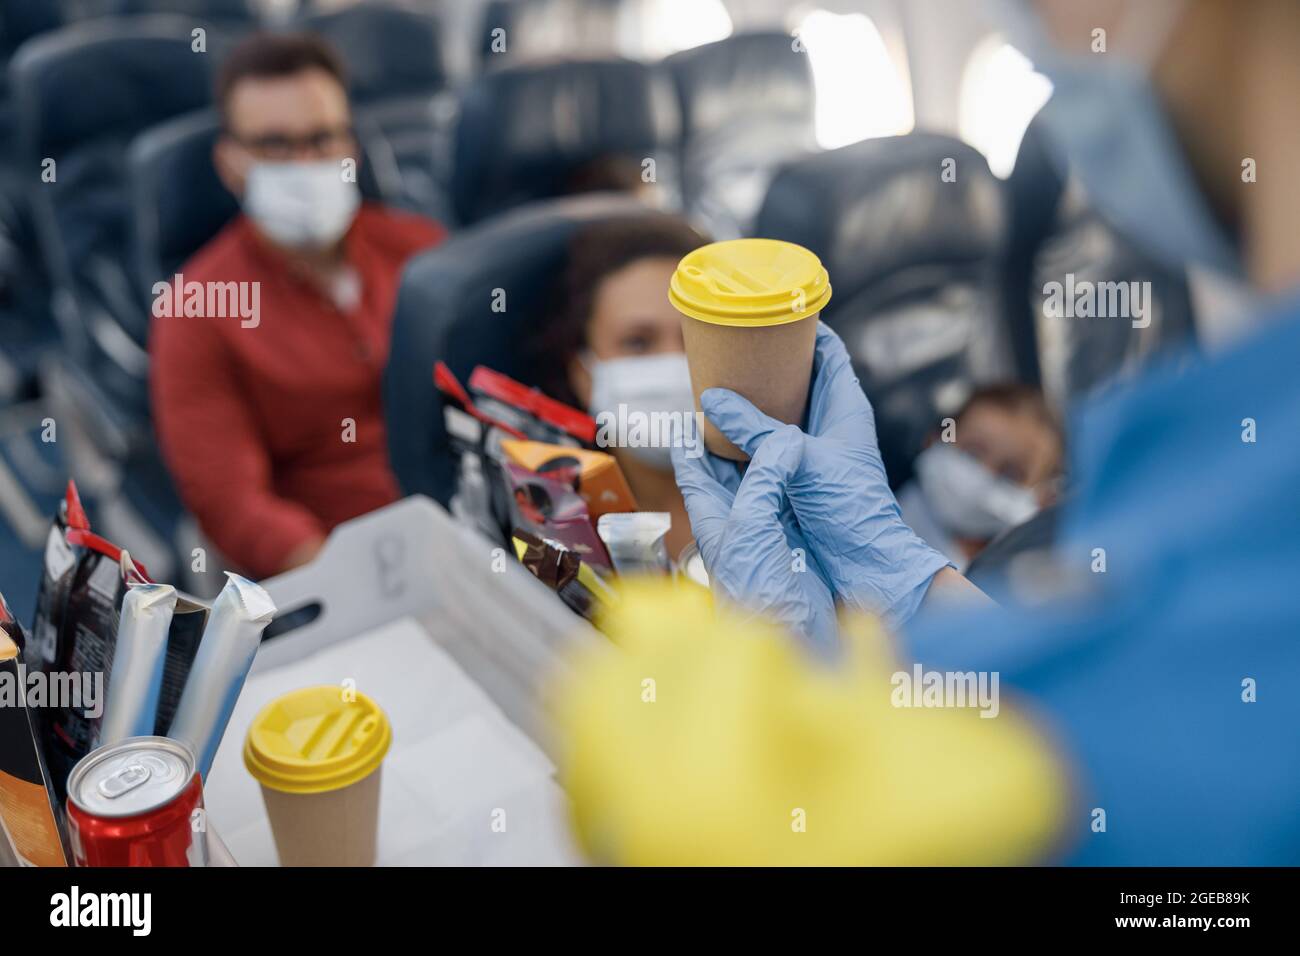 Nahaufnahme der Hände in Schutzhandschuhen des Flugbegleiters, der den Passagieren an Bord Getränke serviert. Reisen mit dem Flugzeug während der Covid19-Pandemie Stockfoto